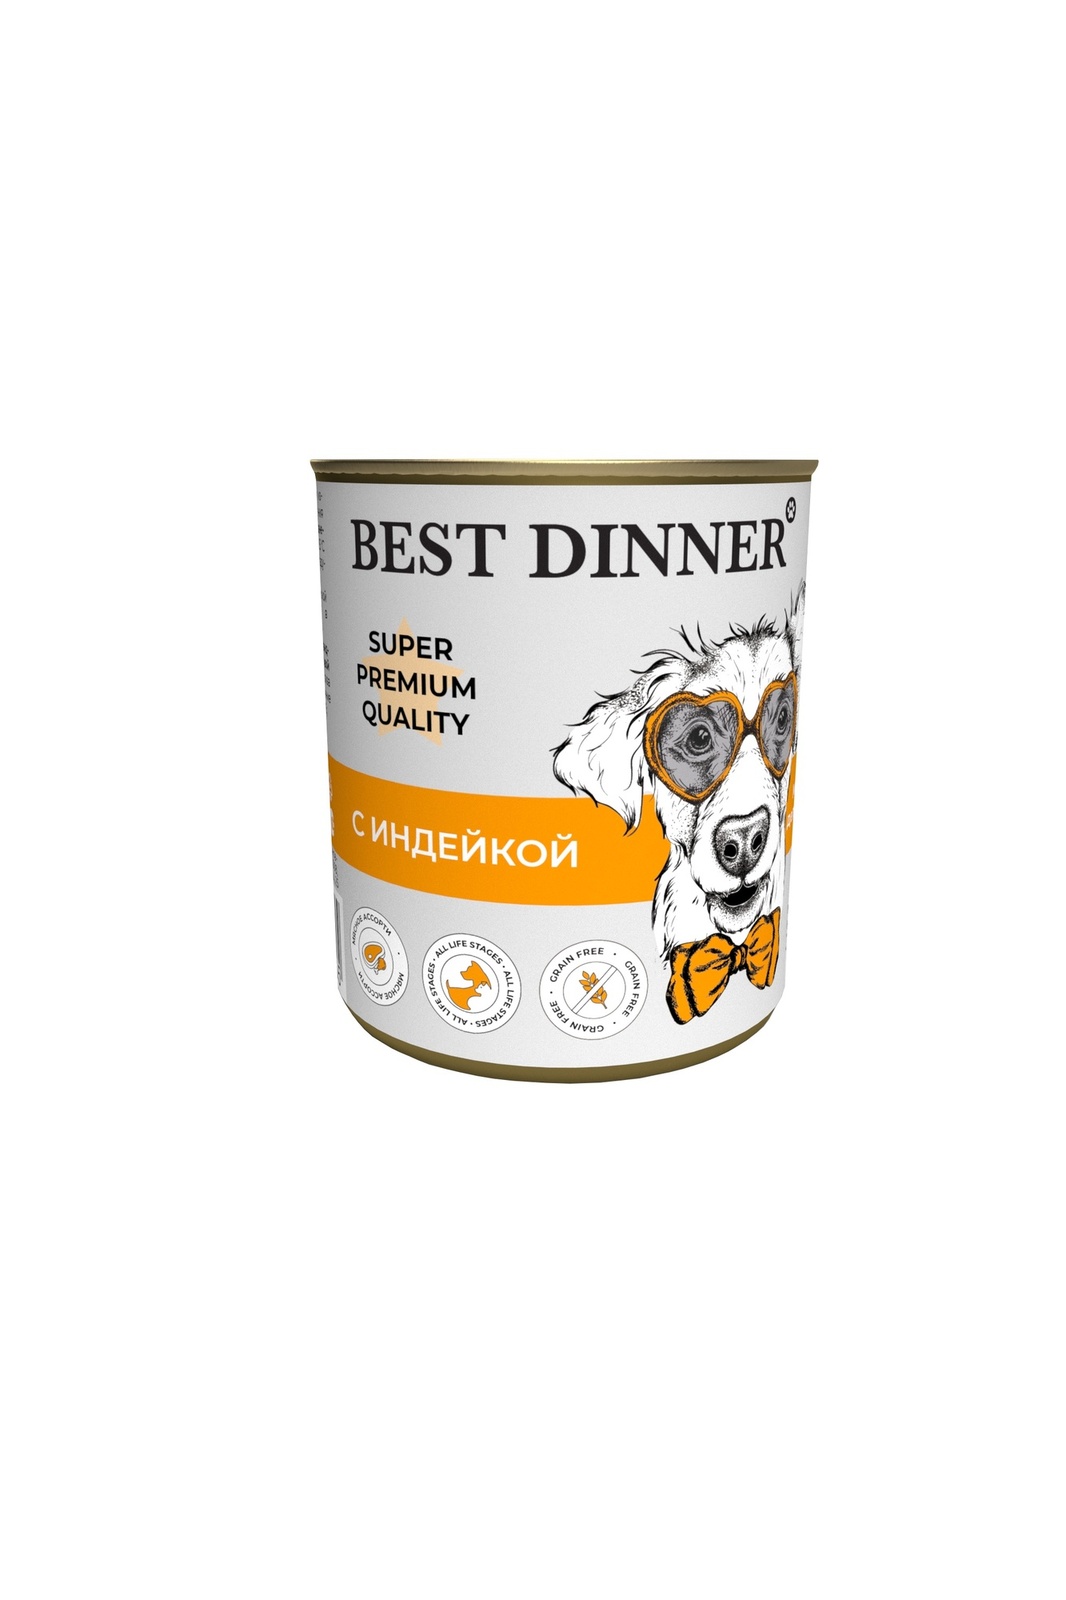 Best Dinner Best Dinner консервы для собак Super Premium С индейкой (340 г) best dinner best dinner консервы premium меню 5 с ягненком и рисом 340 г